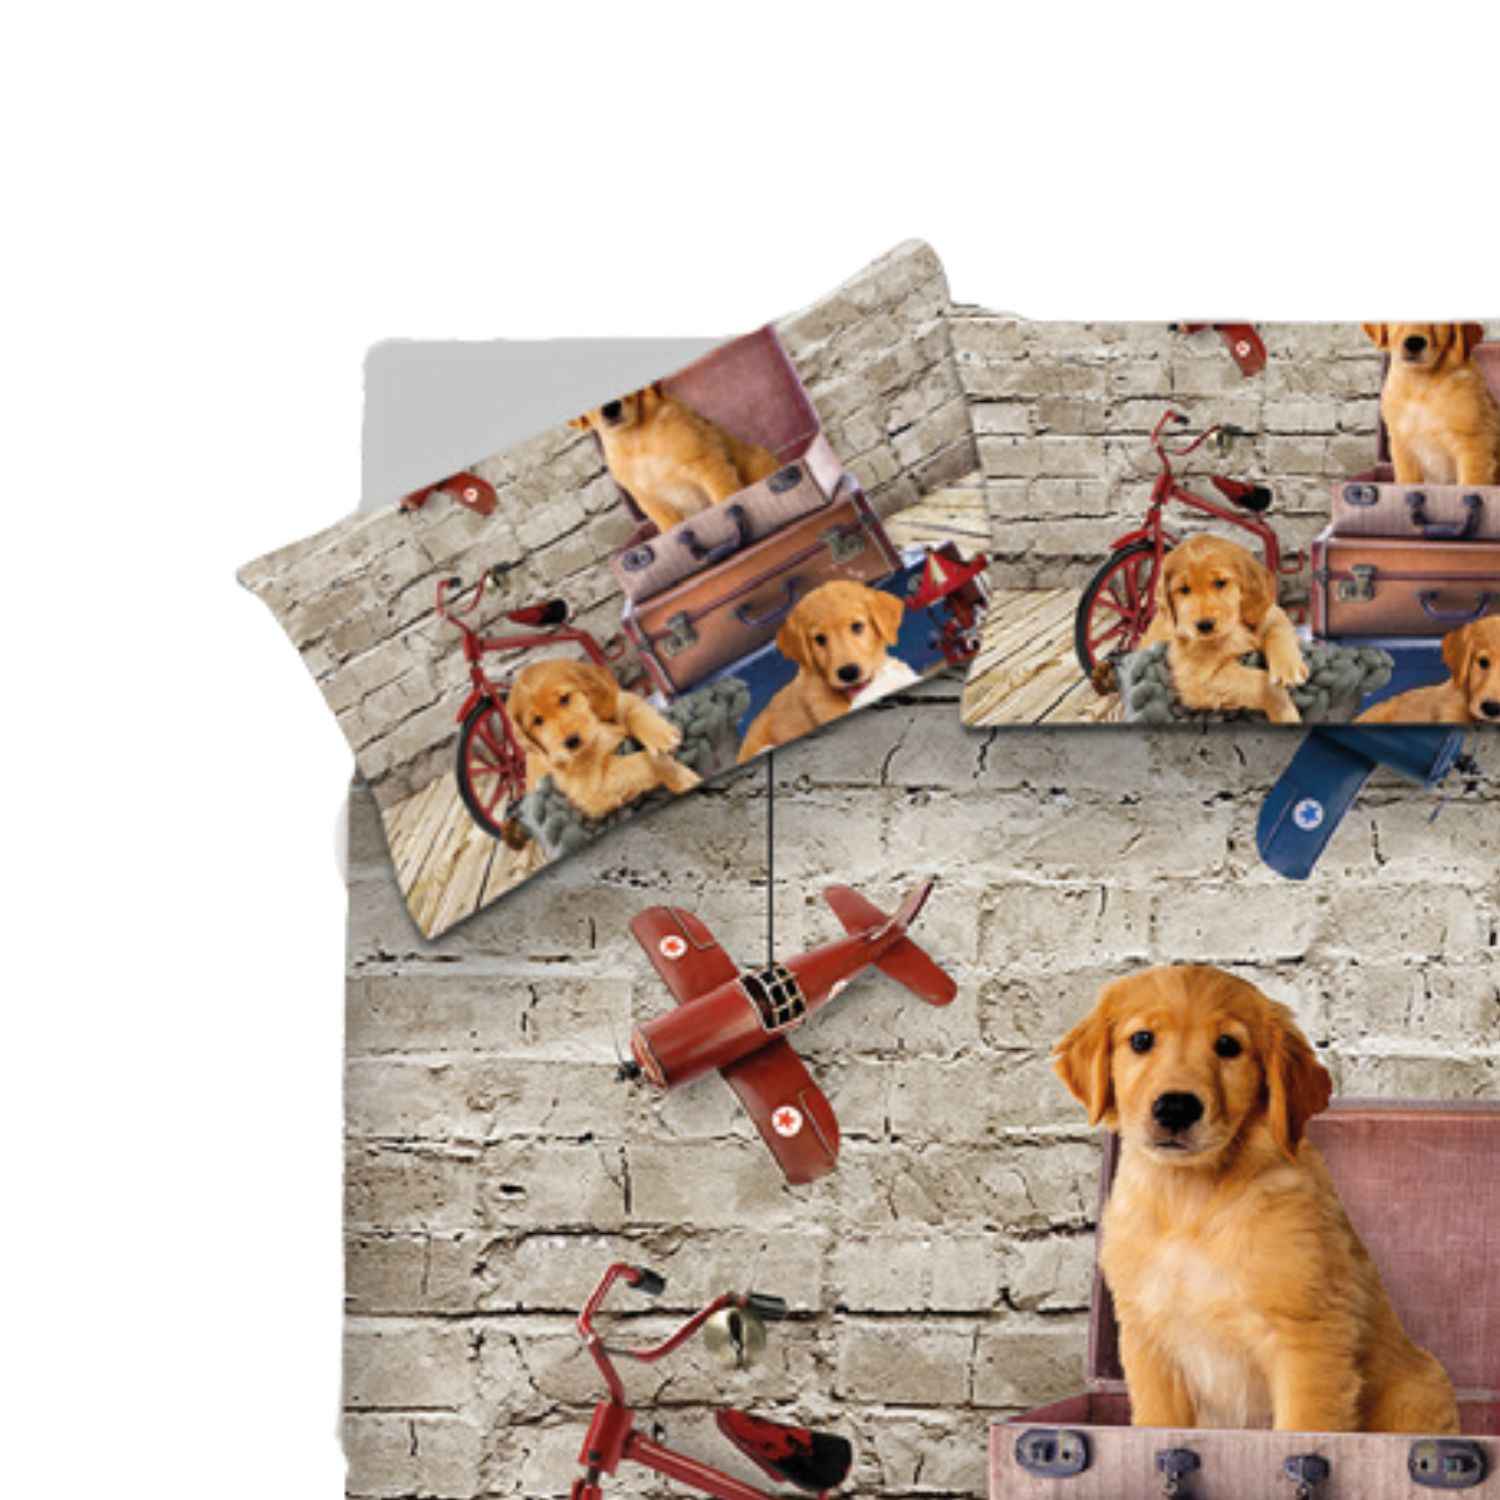 copripiumino-sogni-doro-doggy-stampa-digitale-alta-definizione-cani-cagnolini-cuccioli-giocattoli-mattoncini-parquet-pattern